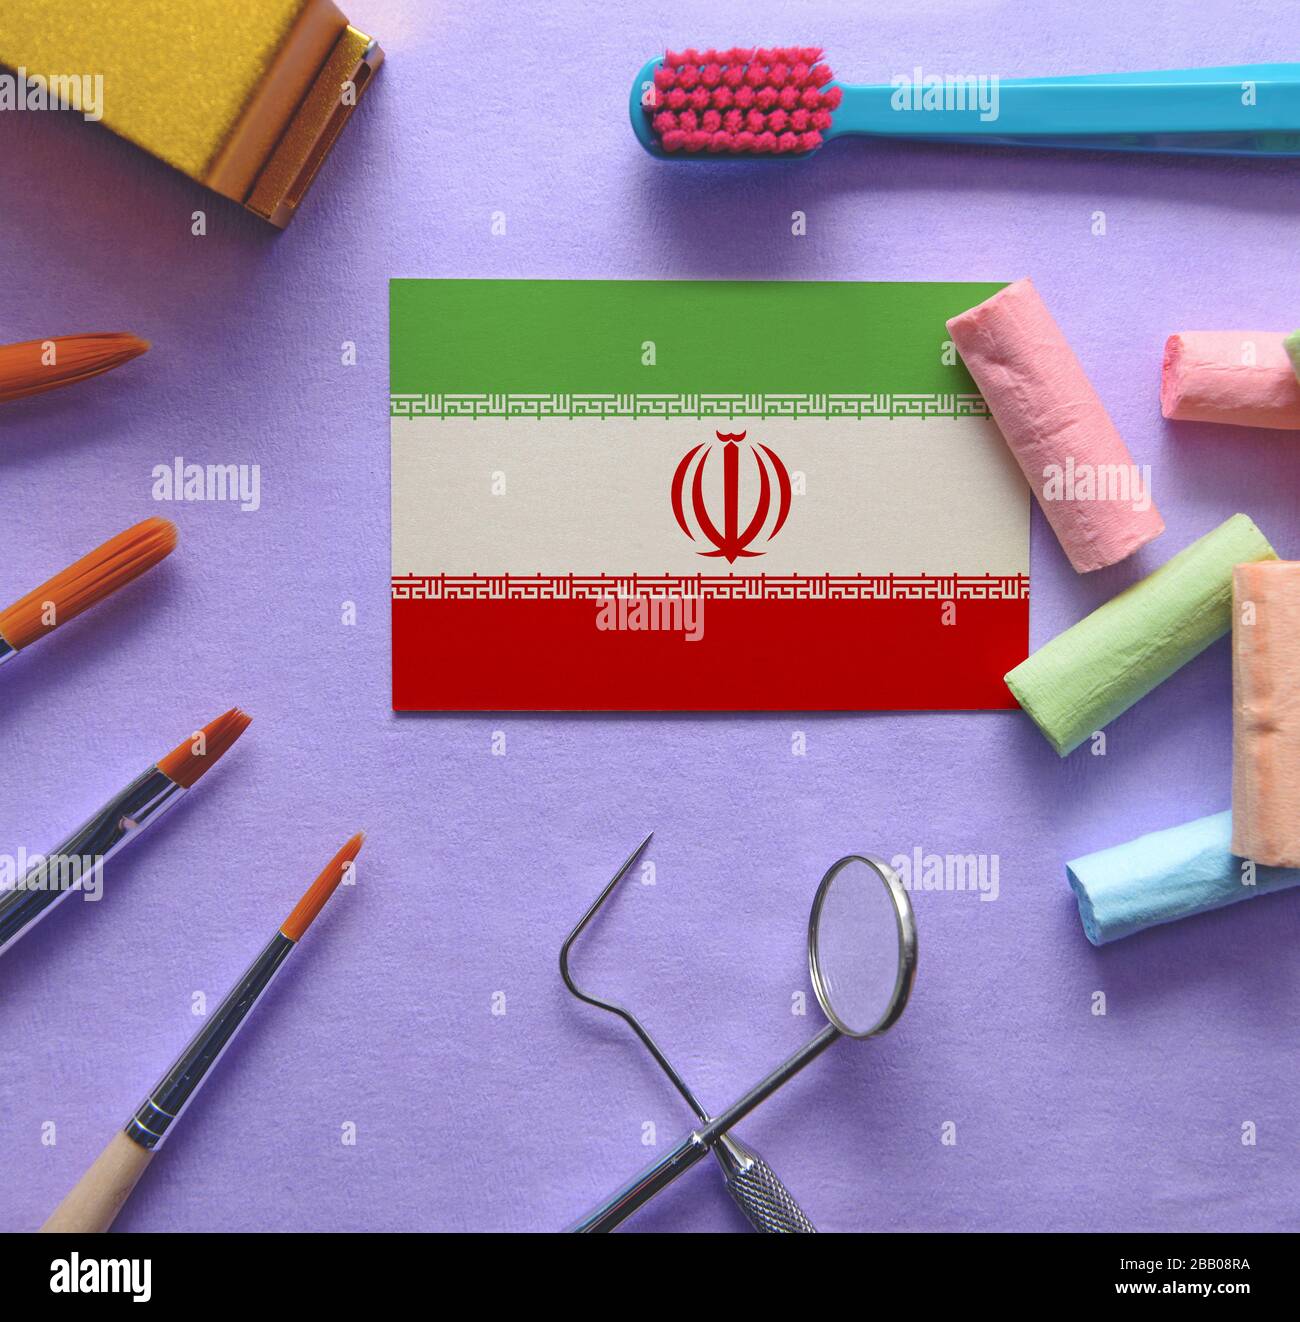 Zahnarztkonzept mit Instrumenten - konzeptionelles Bild des zahnmedizinischen Gesundheitssystems des Iran Stockfoto